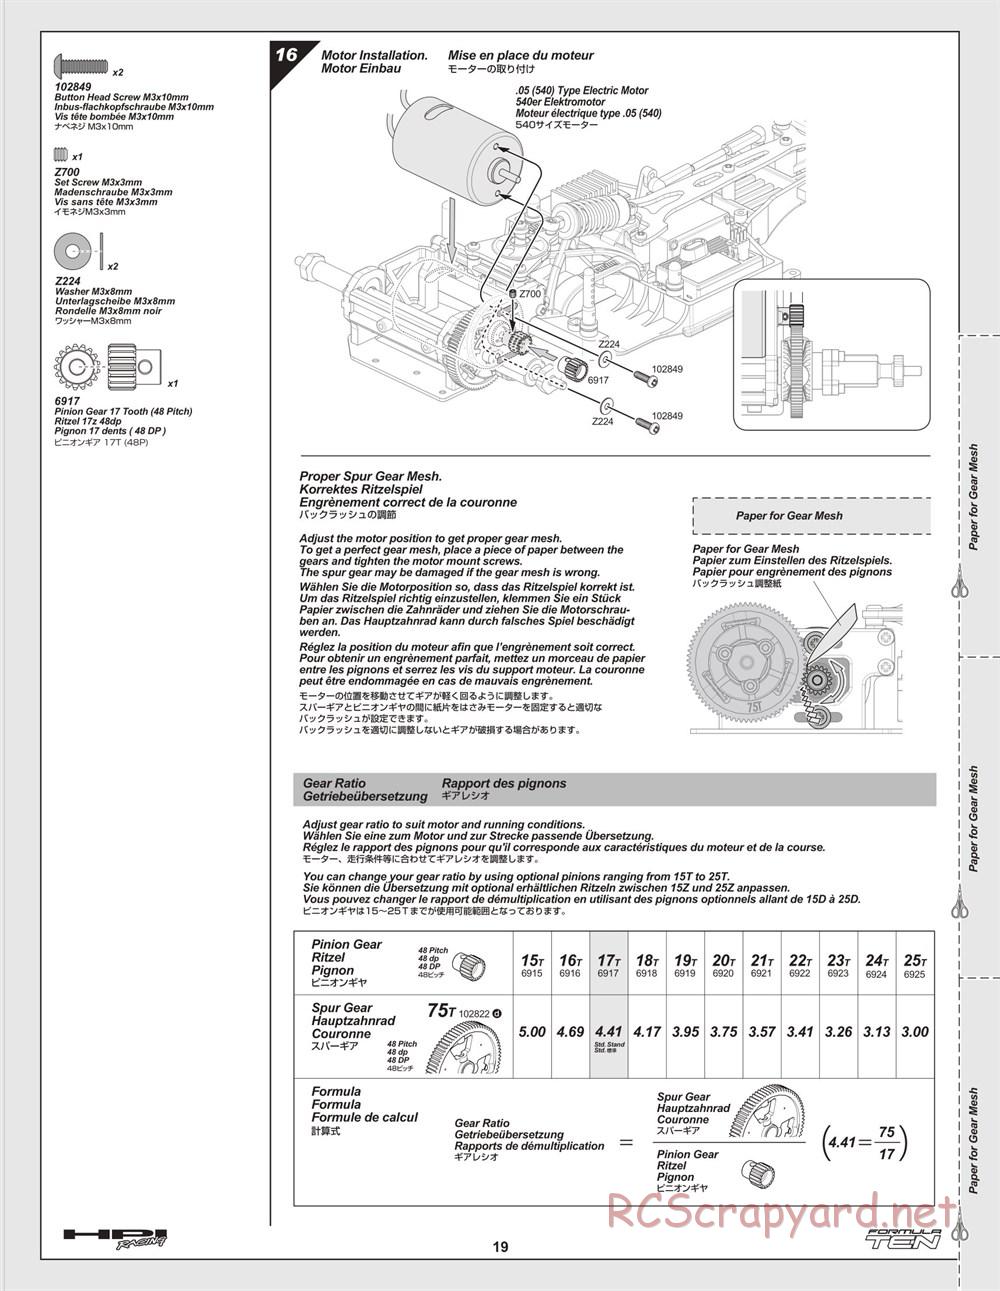 HPI - F10 - Formula Ten - Manual - Page 19